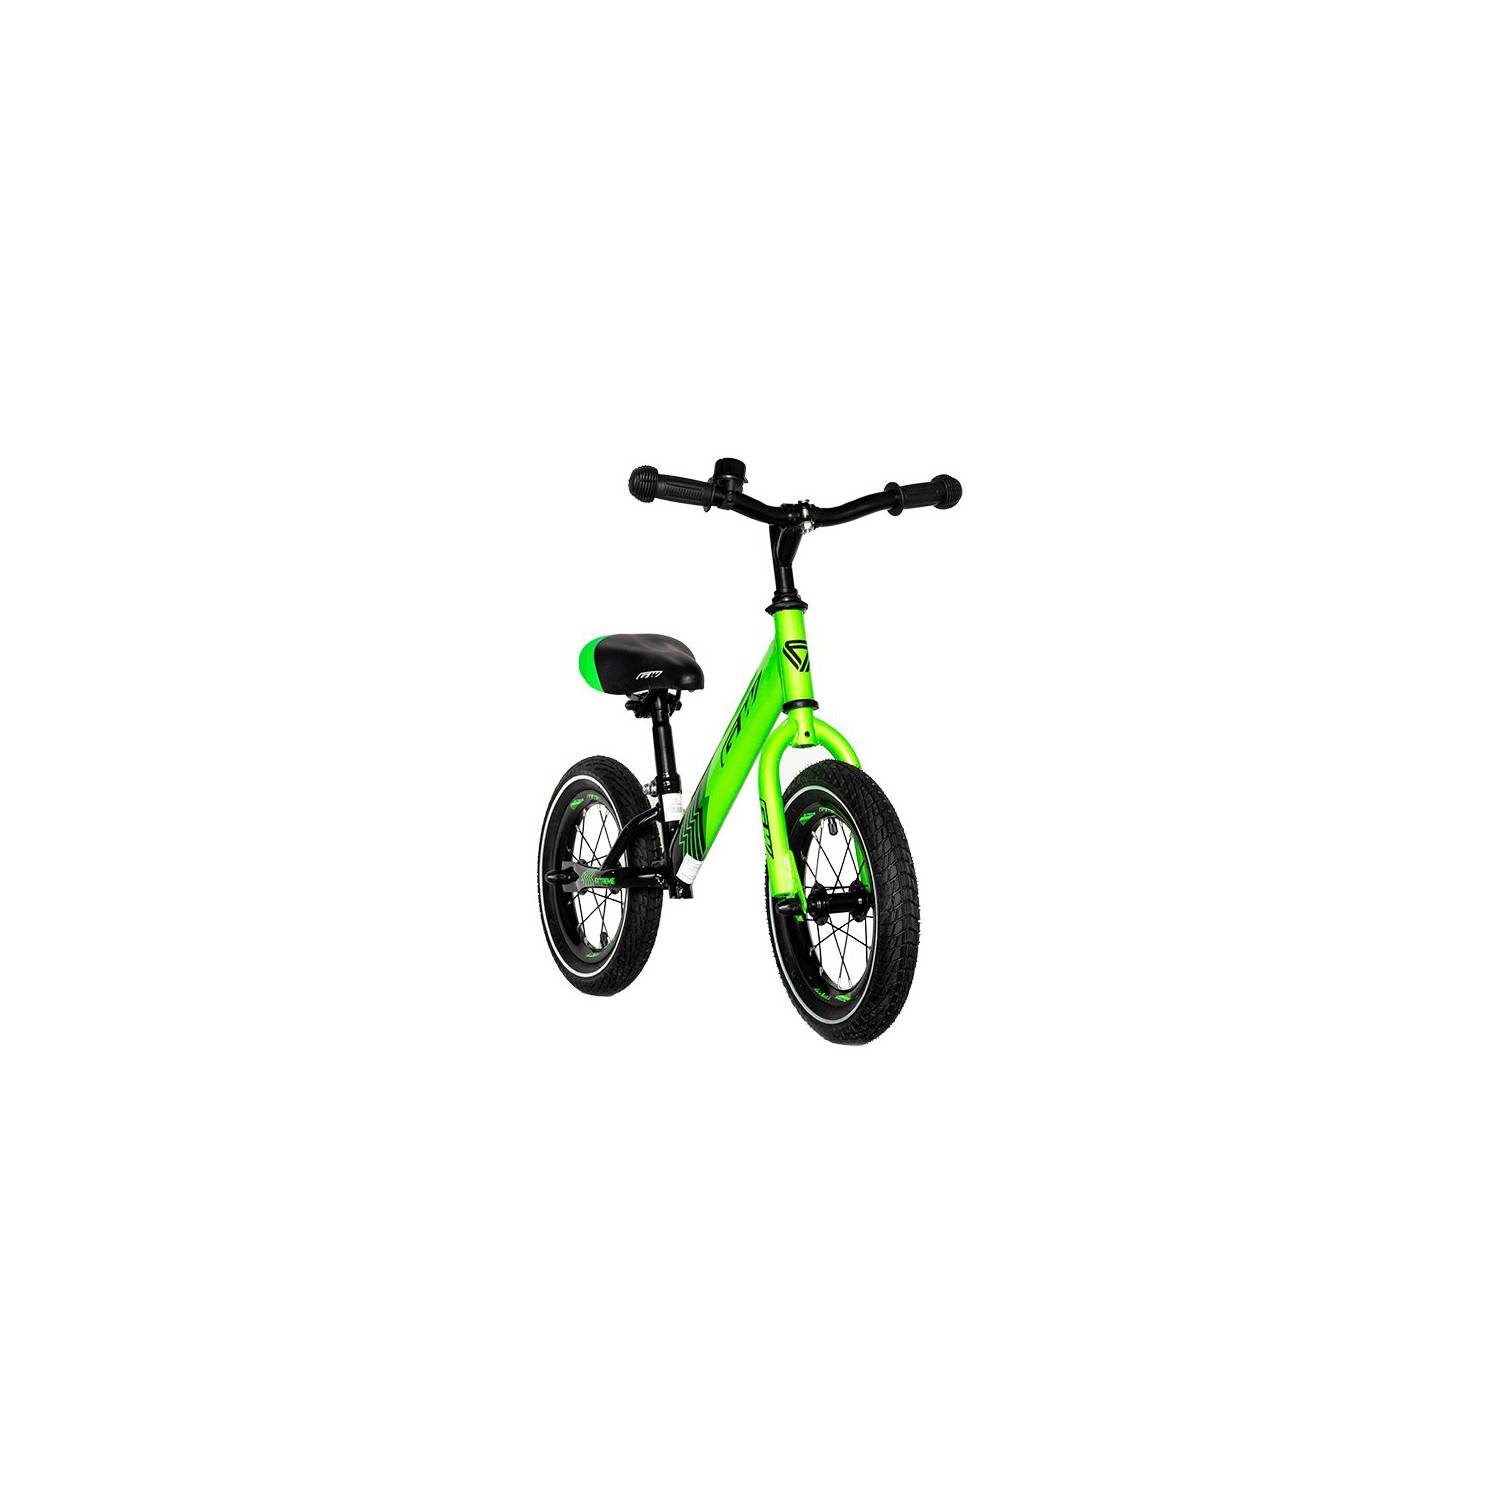 Bicicleta para niños 12 Gw Txt 650 2-5 años Verde GW